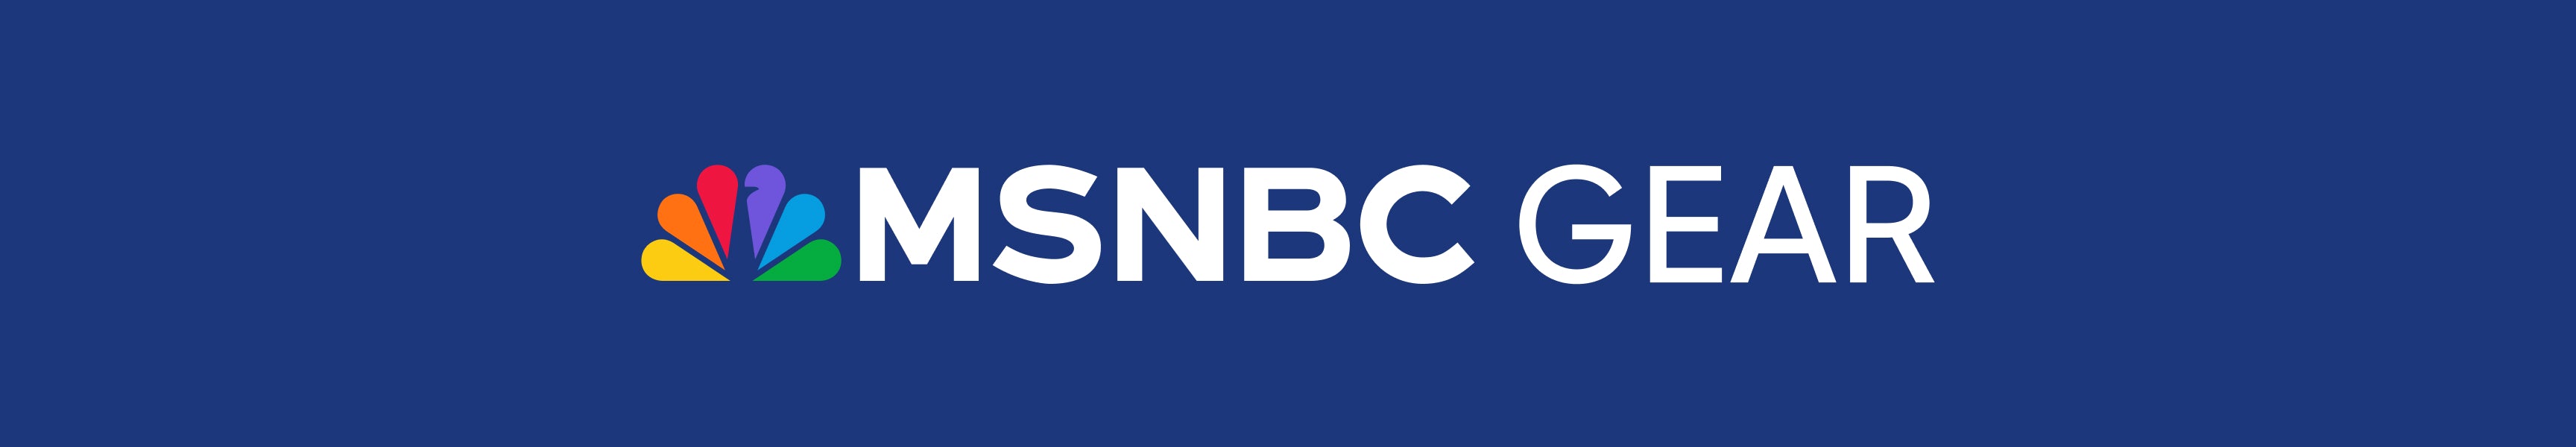 MSNBC Gear